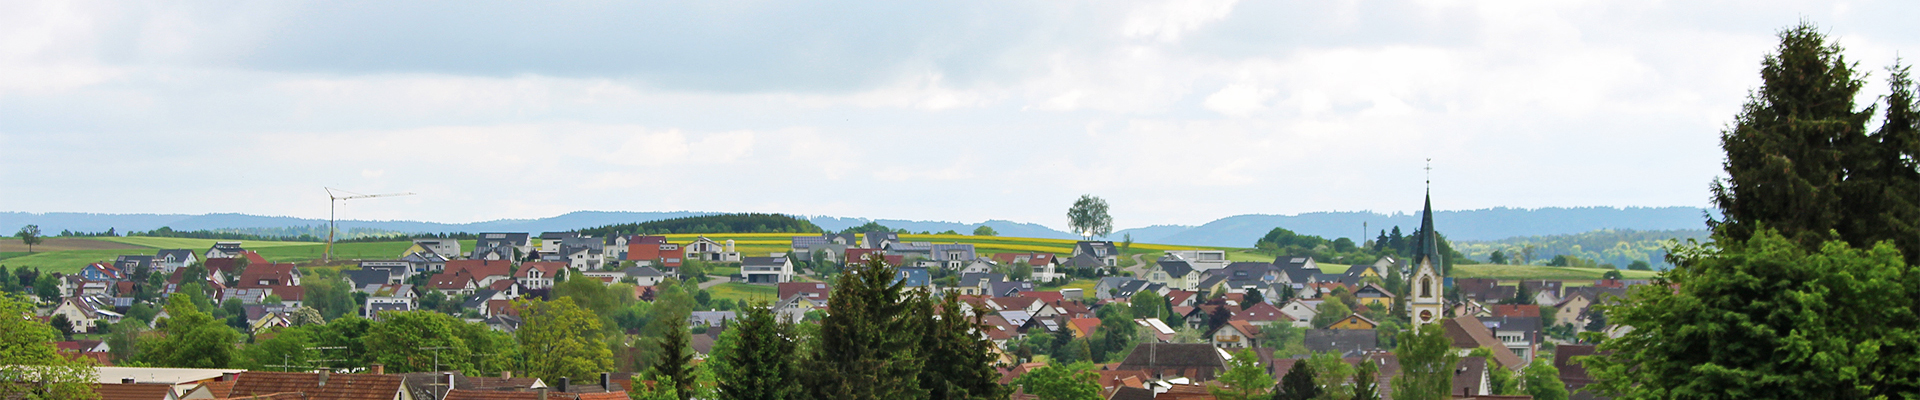 Headerbild der Gemeinde Villingendorf